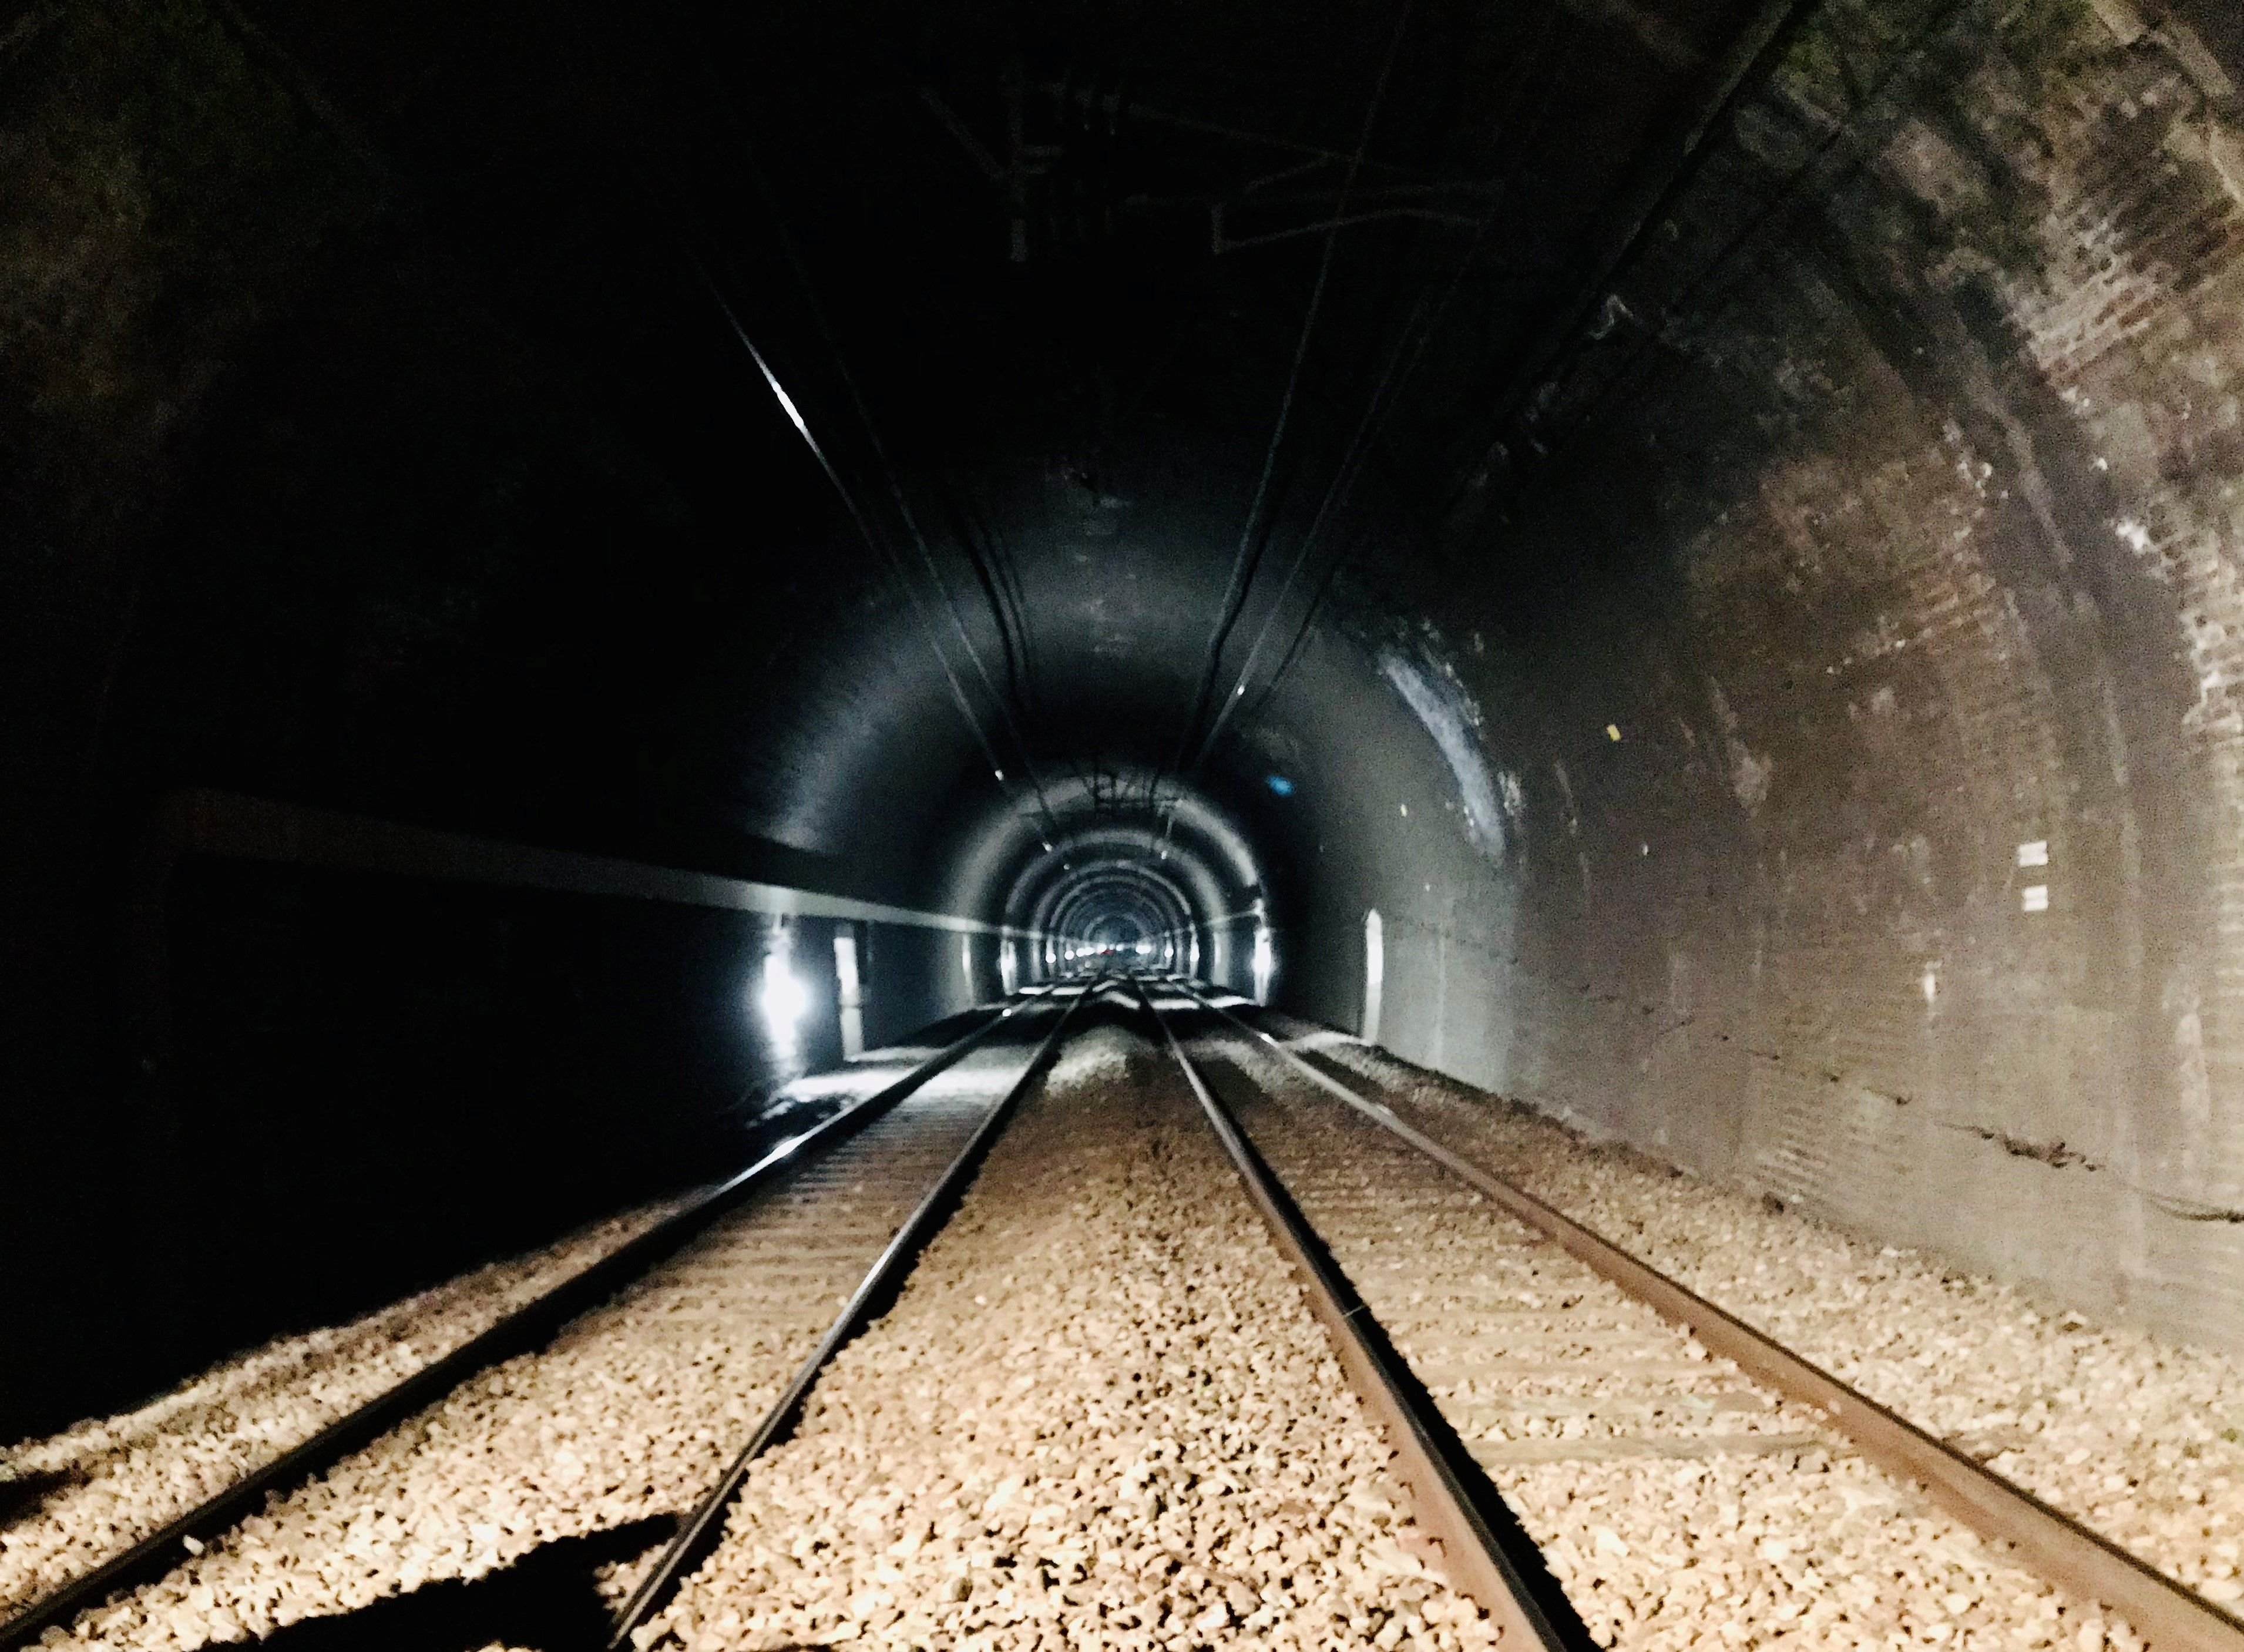 L'association "LNPN oui, mais pas à n'importe quel prix" demande le prolongement du tunnel jusqu’au viaduc de Barentin (Seine-Maritime) pour préserver plusieurs villages. #PRESSE30